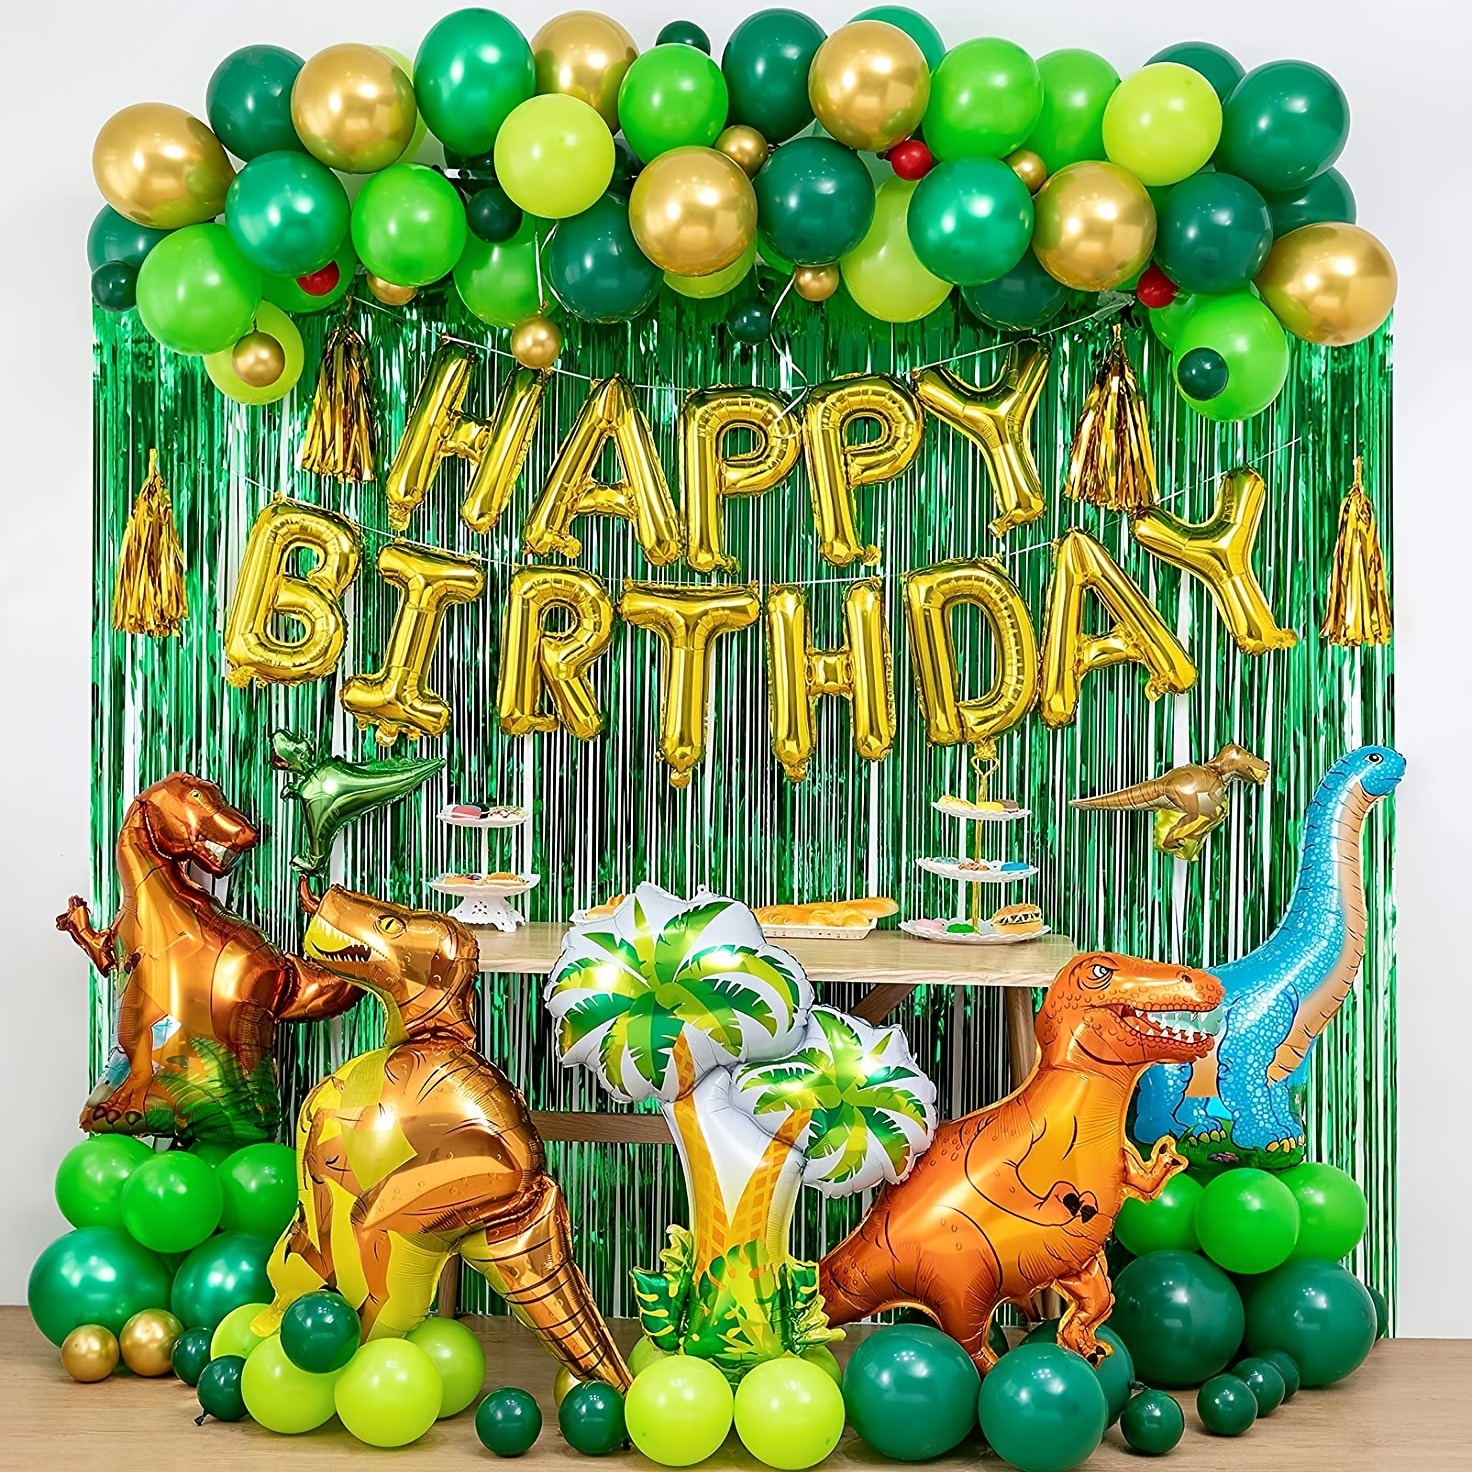 40 Lindas ideas para decorar Fiesta de cumpleaños de Dinosaurios   Decoracion de dinosaurios fiestas, Fiesta tematica de dinosaurios,  Decoracion fiesta